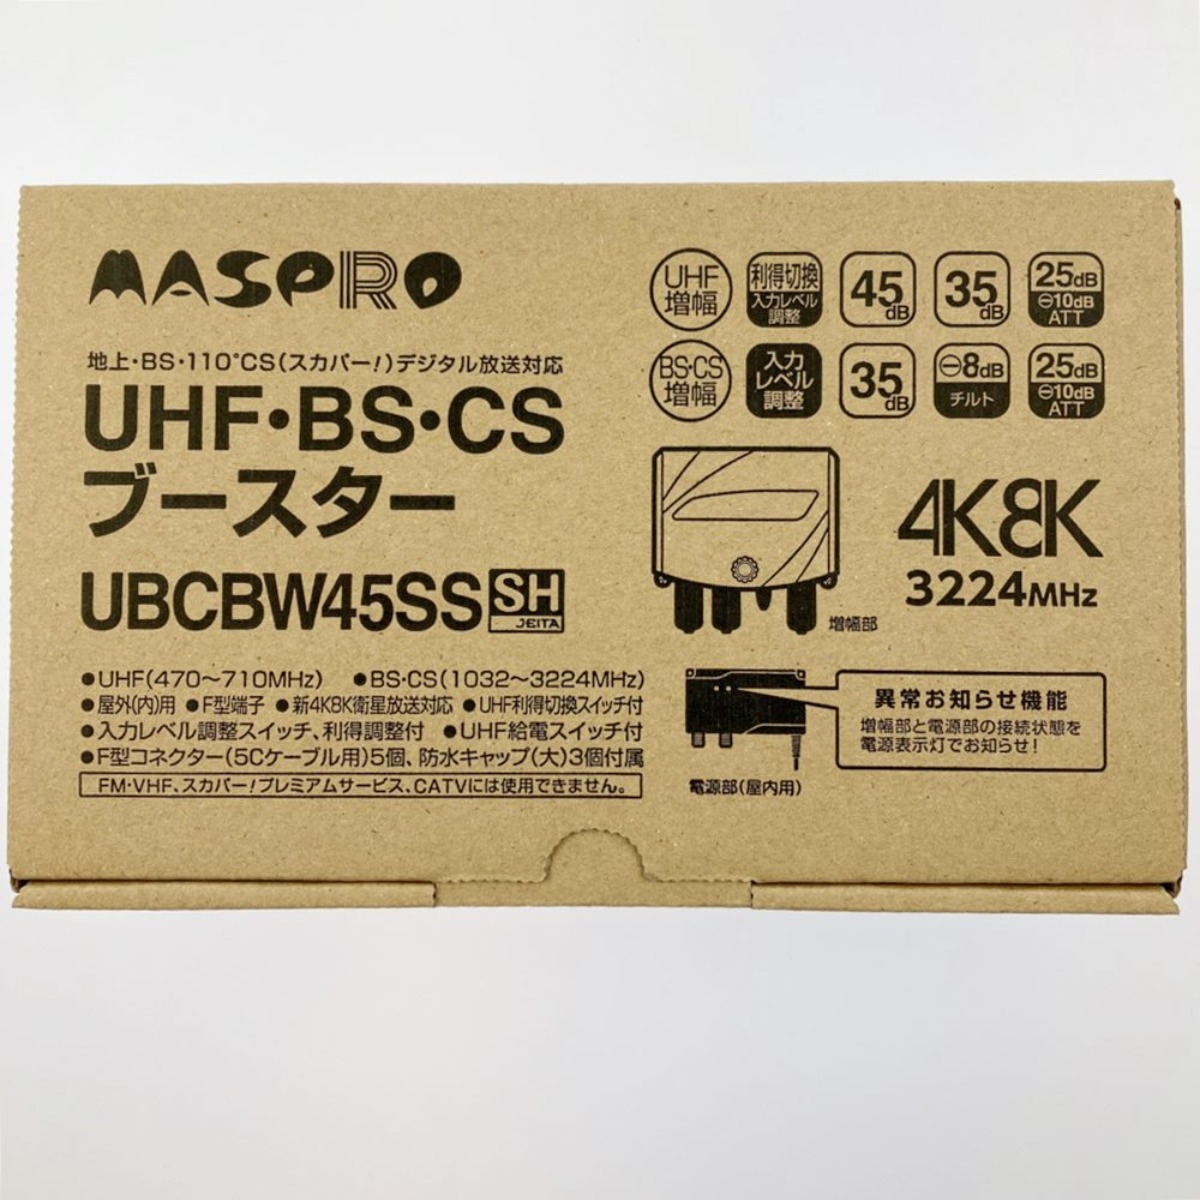 vv MASPRO форель Pro UHF*BS*CS бустер UBCBW45SS вскрыть не использовался товар не использовался . близкий 